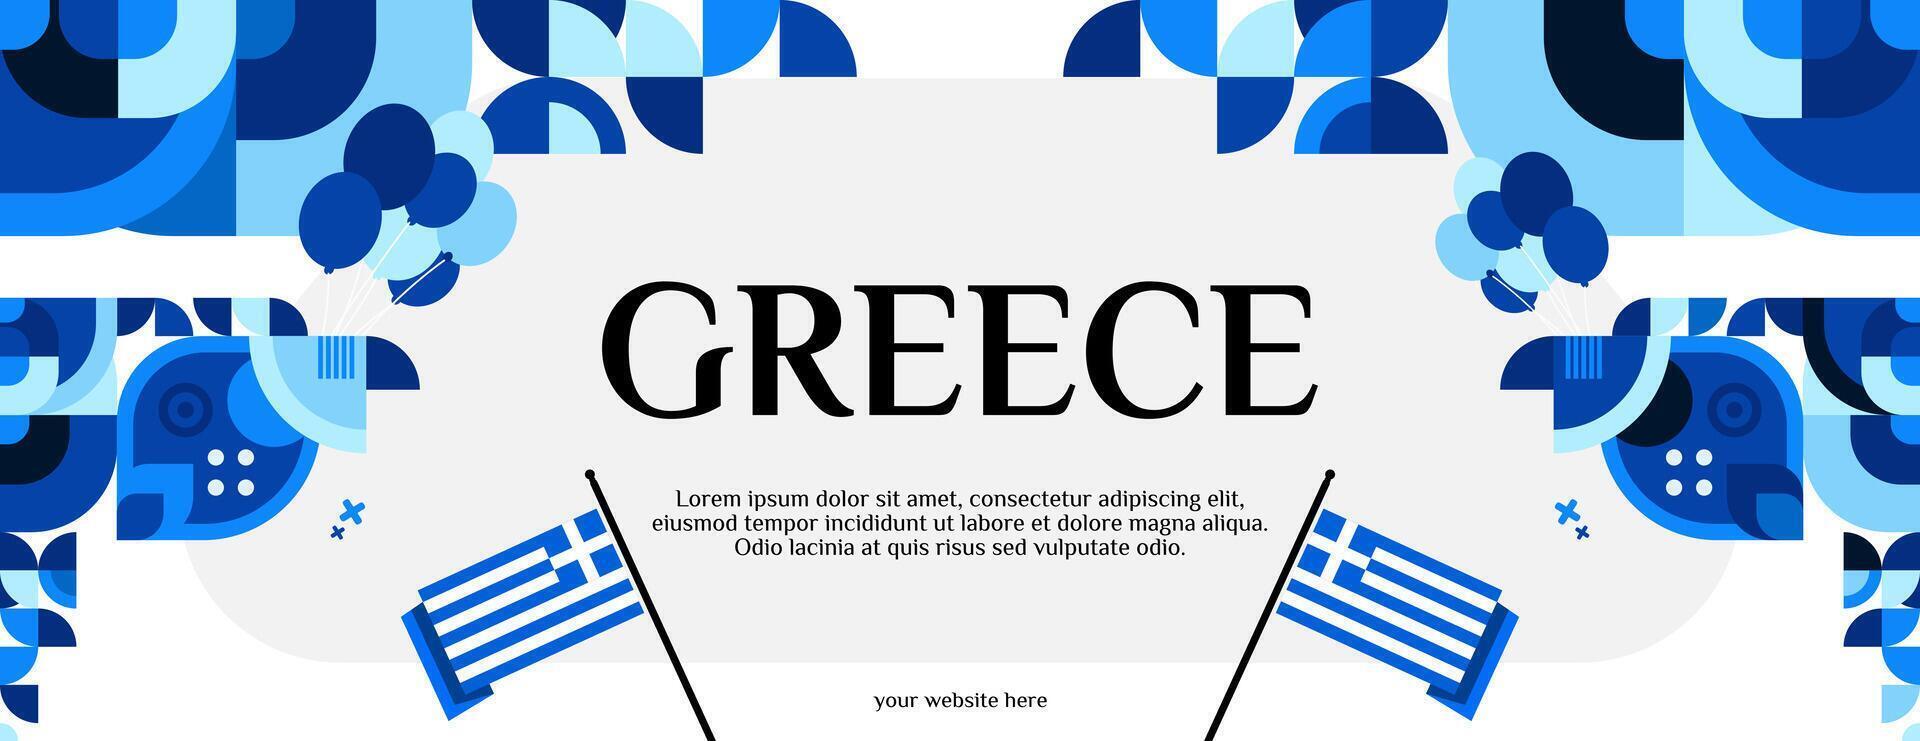 Grecia indipendenza giorno bandiera nel moderno geometrico stile. largo bandiera per sito web, sociale e Di Più con tipografia. illustrazione per nazionale vacanza celebrazione festa. contento greco indipendenza giorno vettore